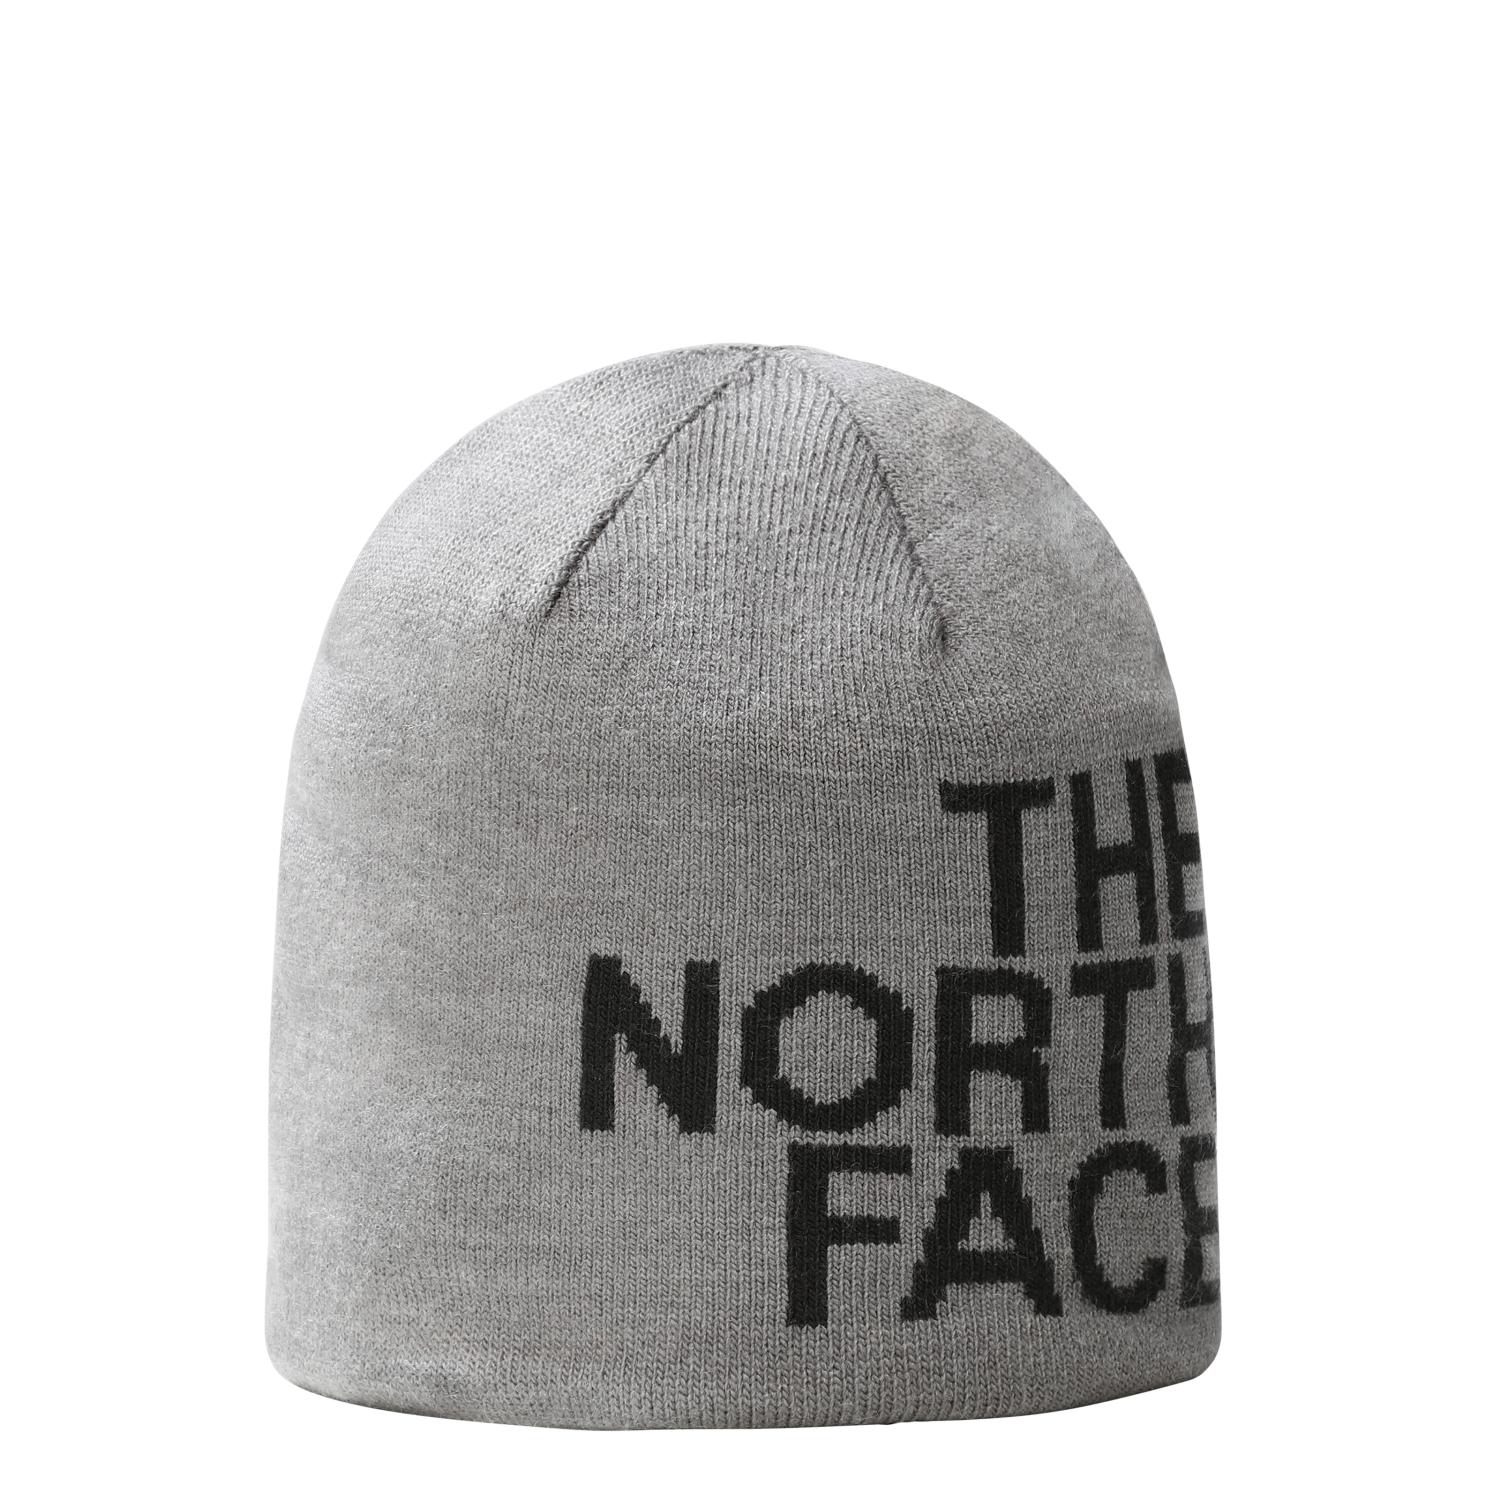 Bonnet The North Face